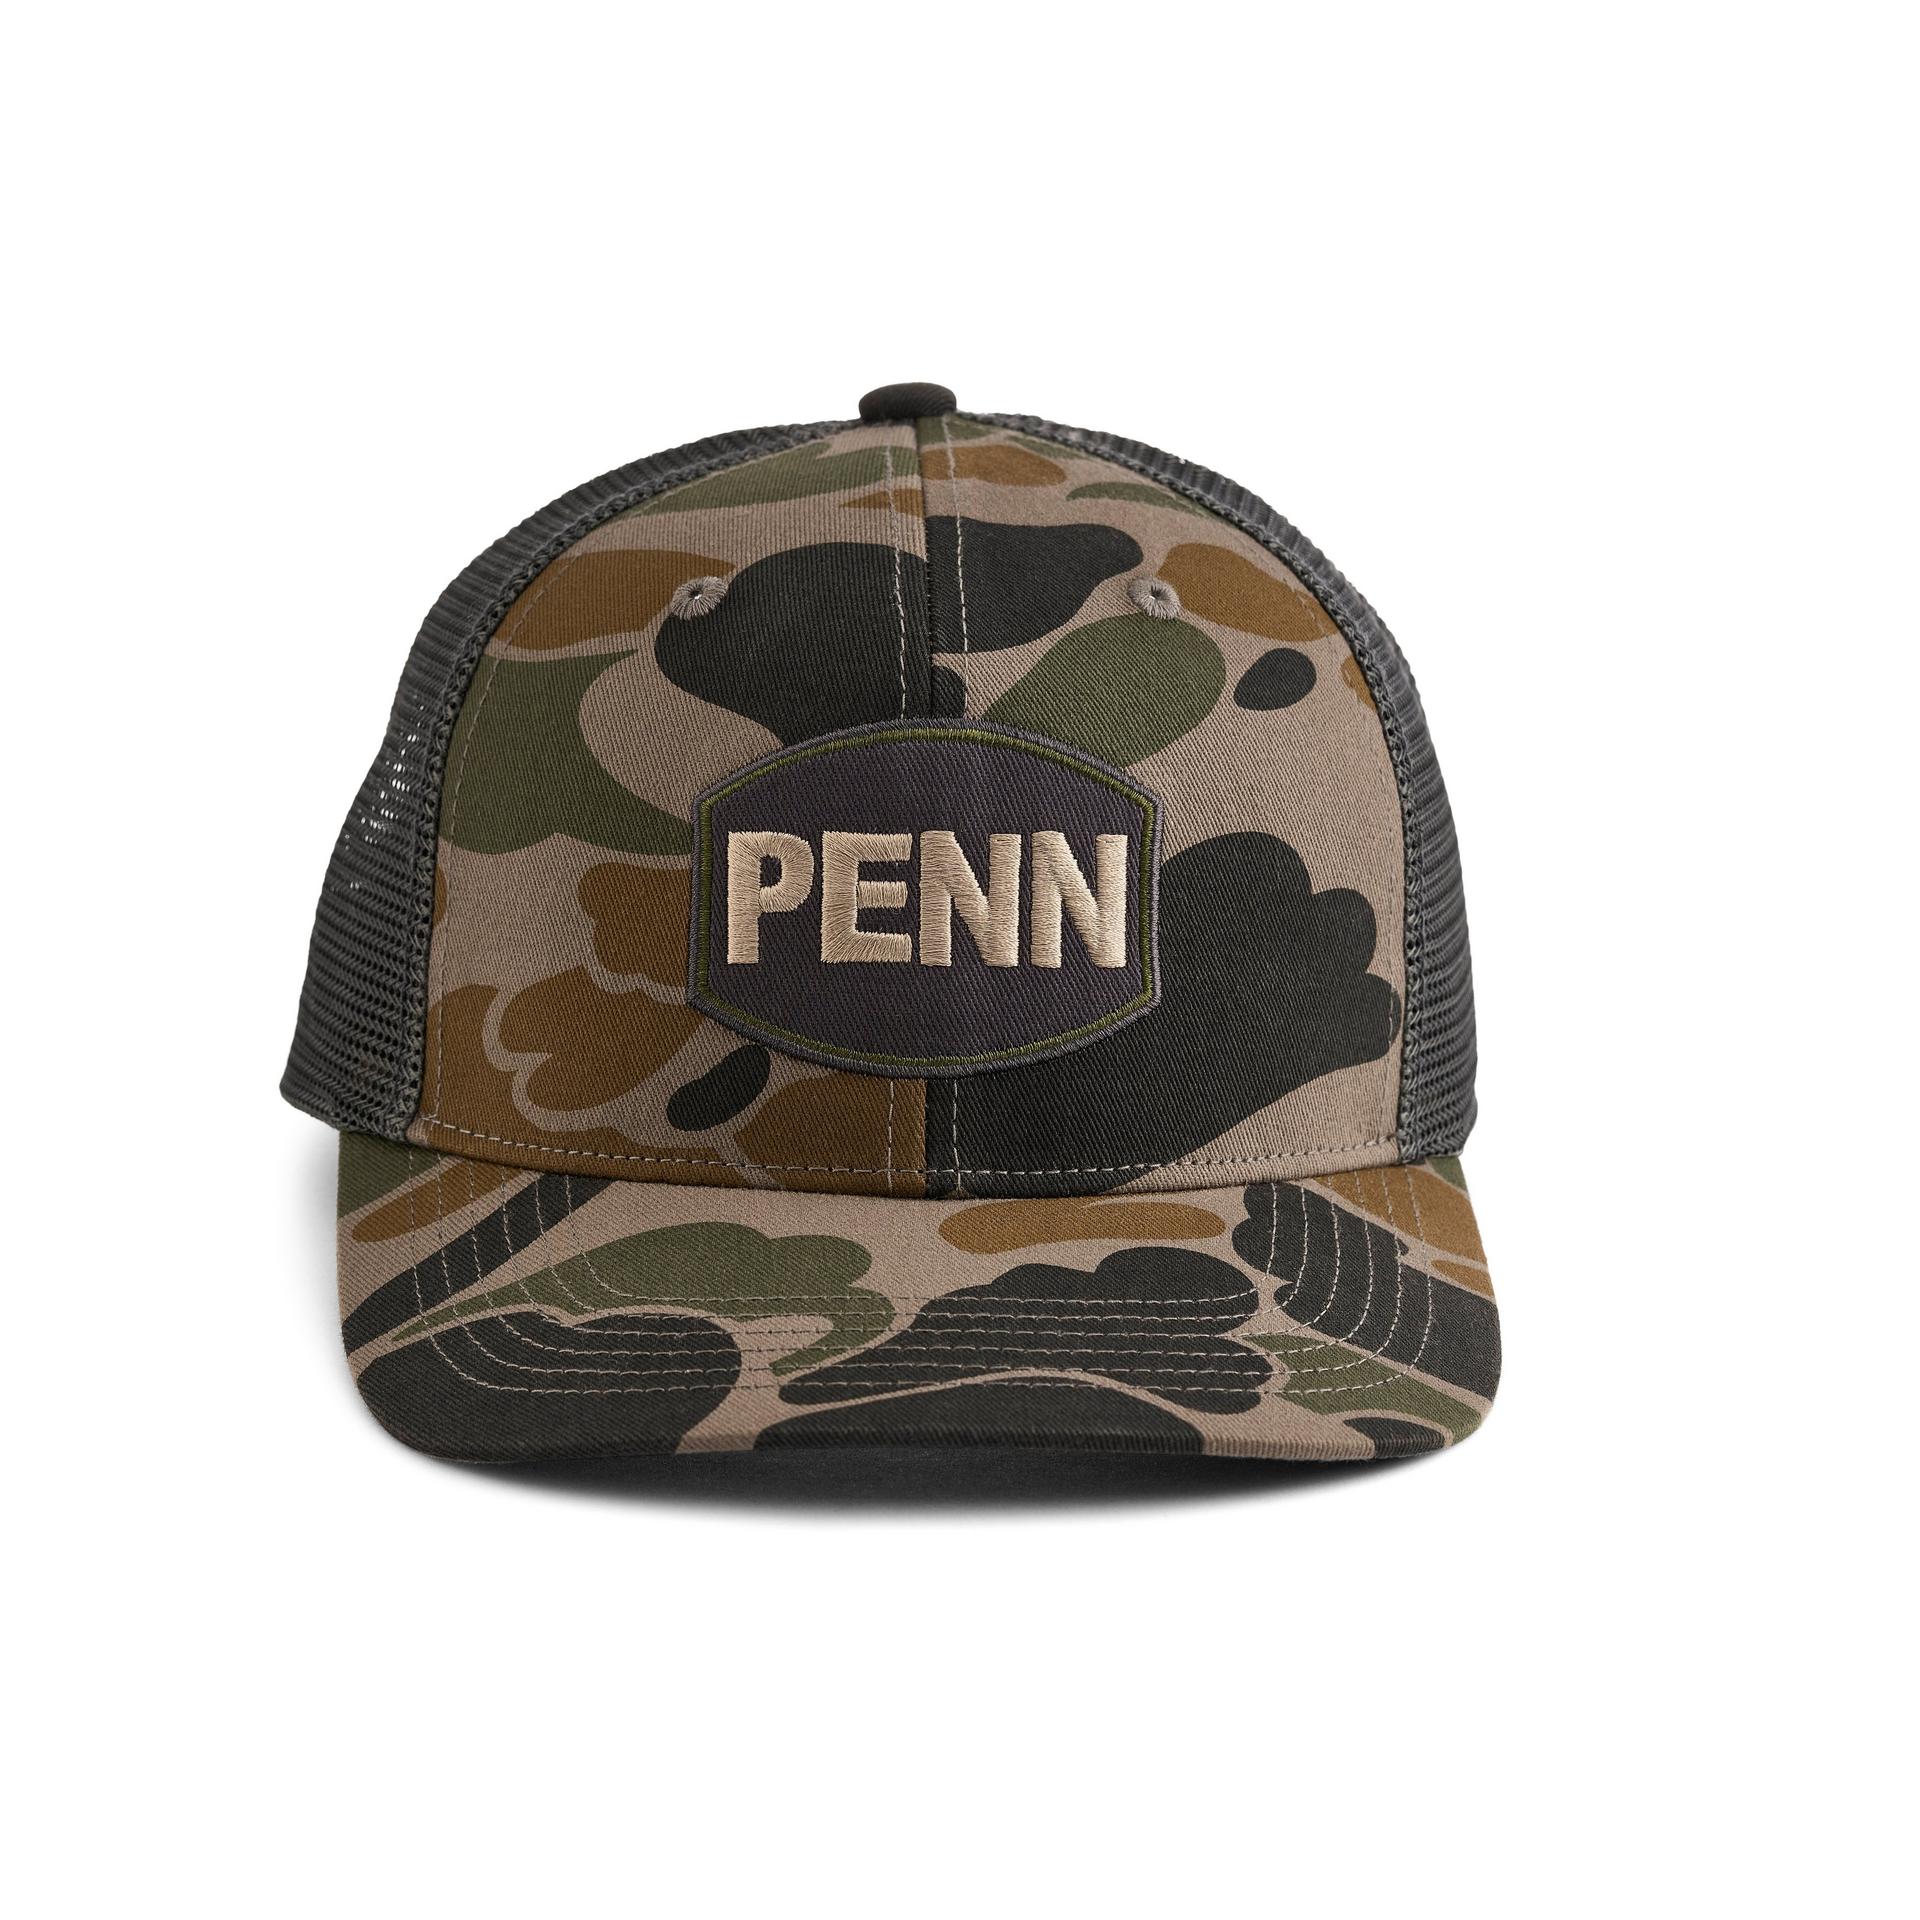 Penn 146 : ตลาดอุปกรณ์ตกปลา Fishing Gear Market